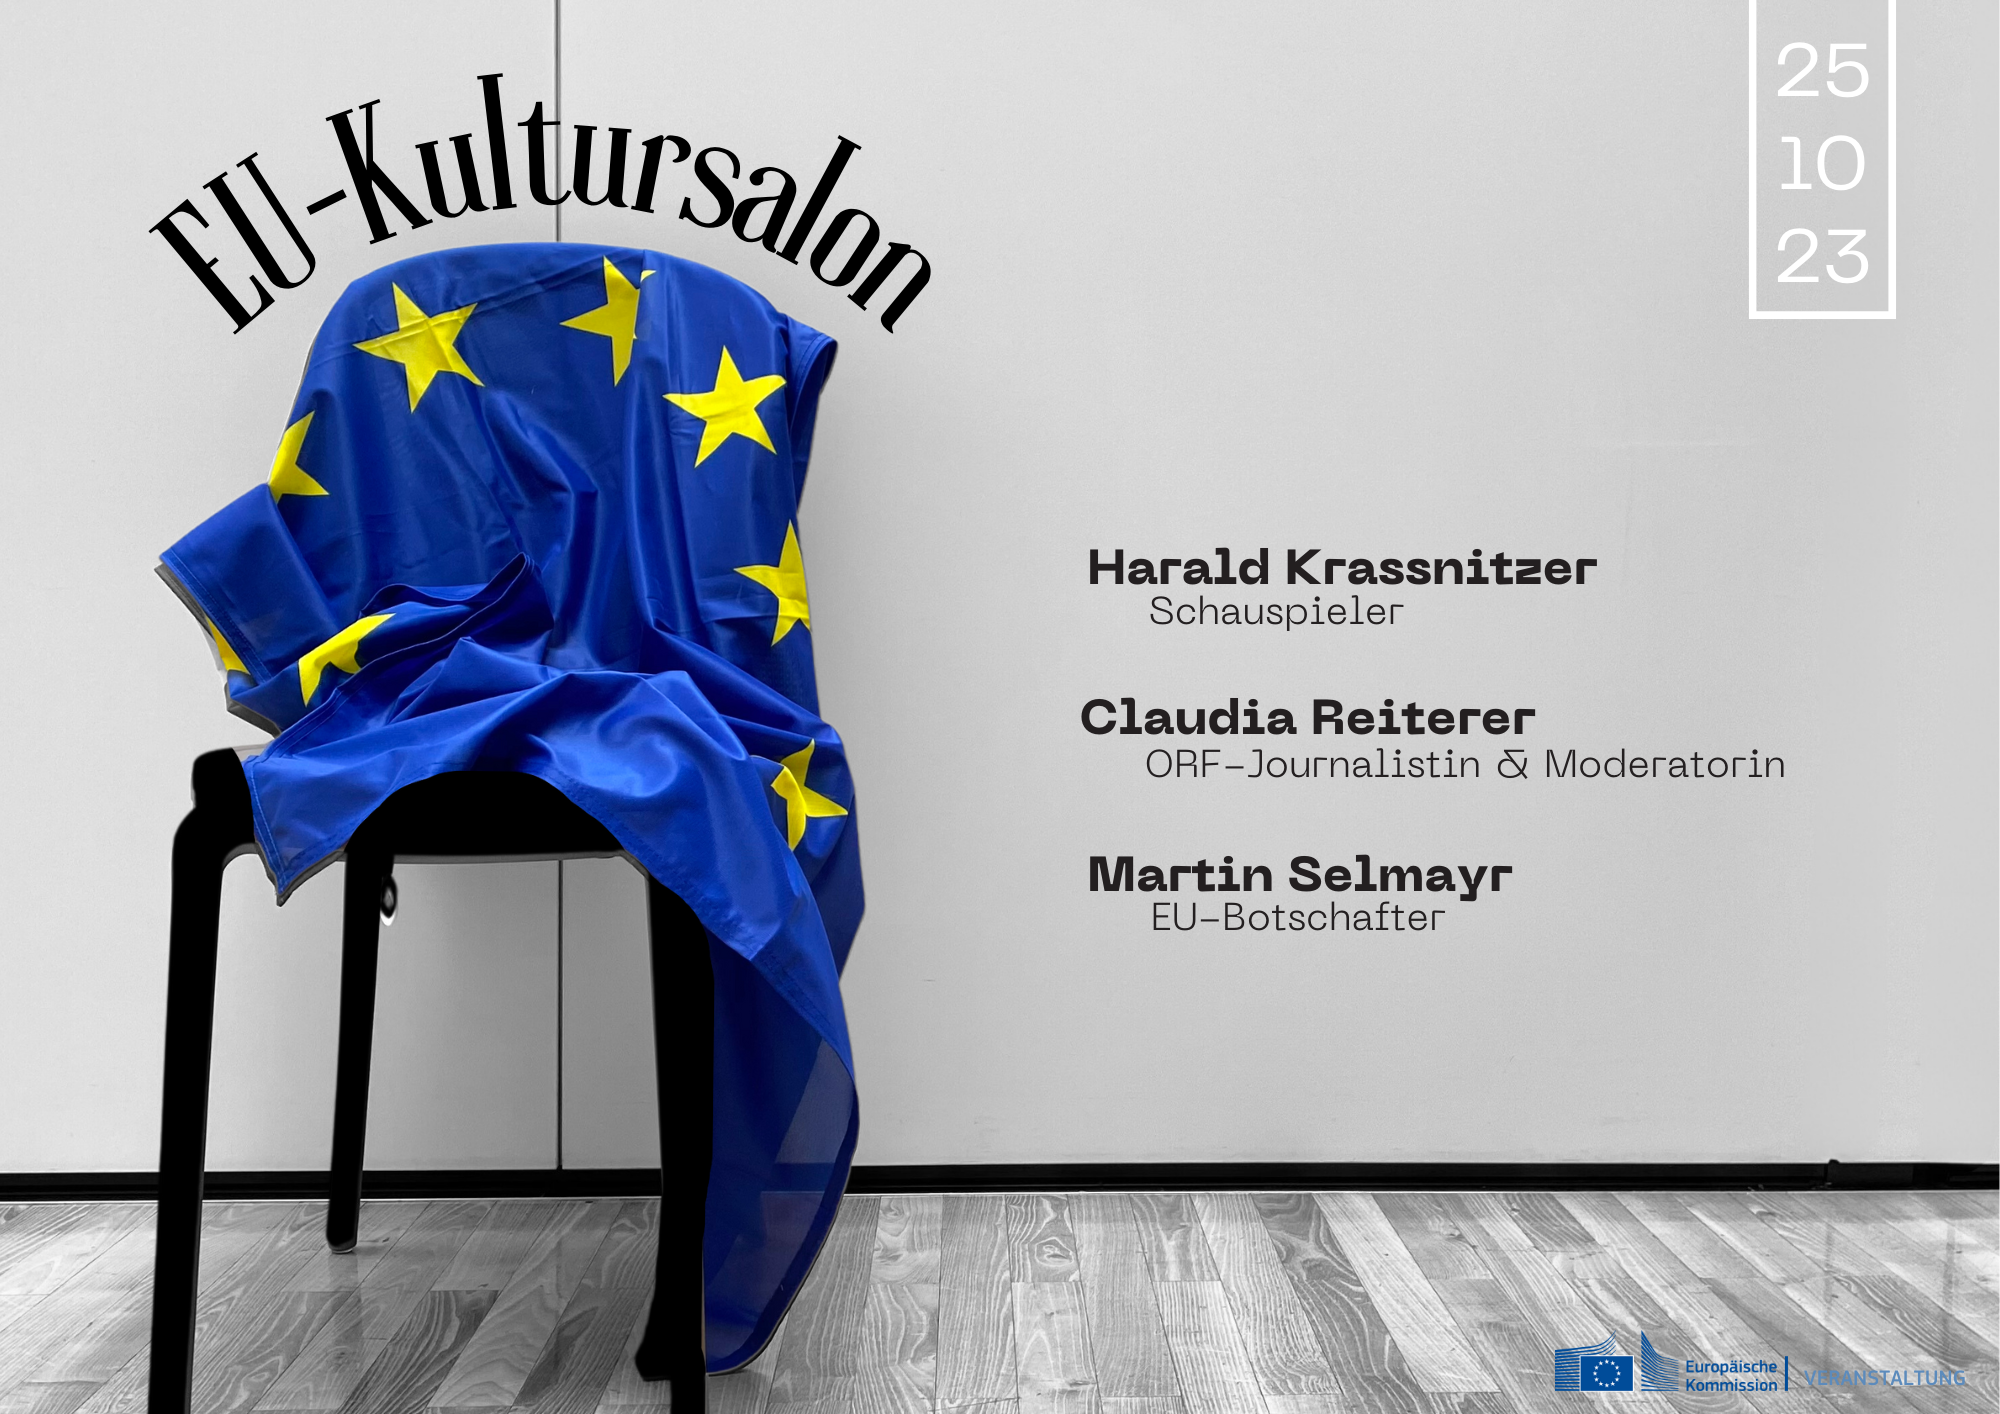 Einladung zum EU-Kultursalon am 25. Oktober 